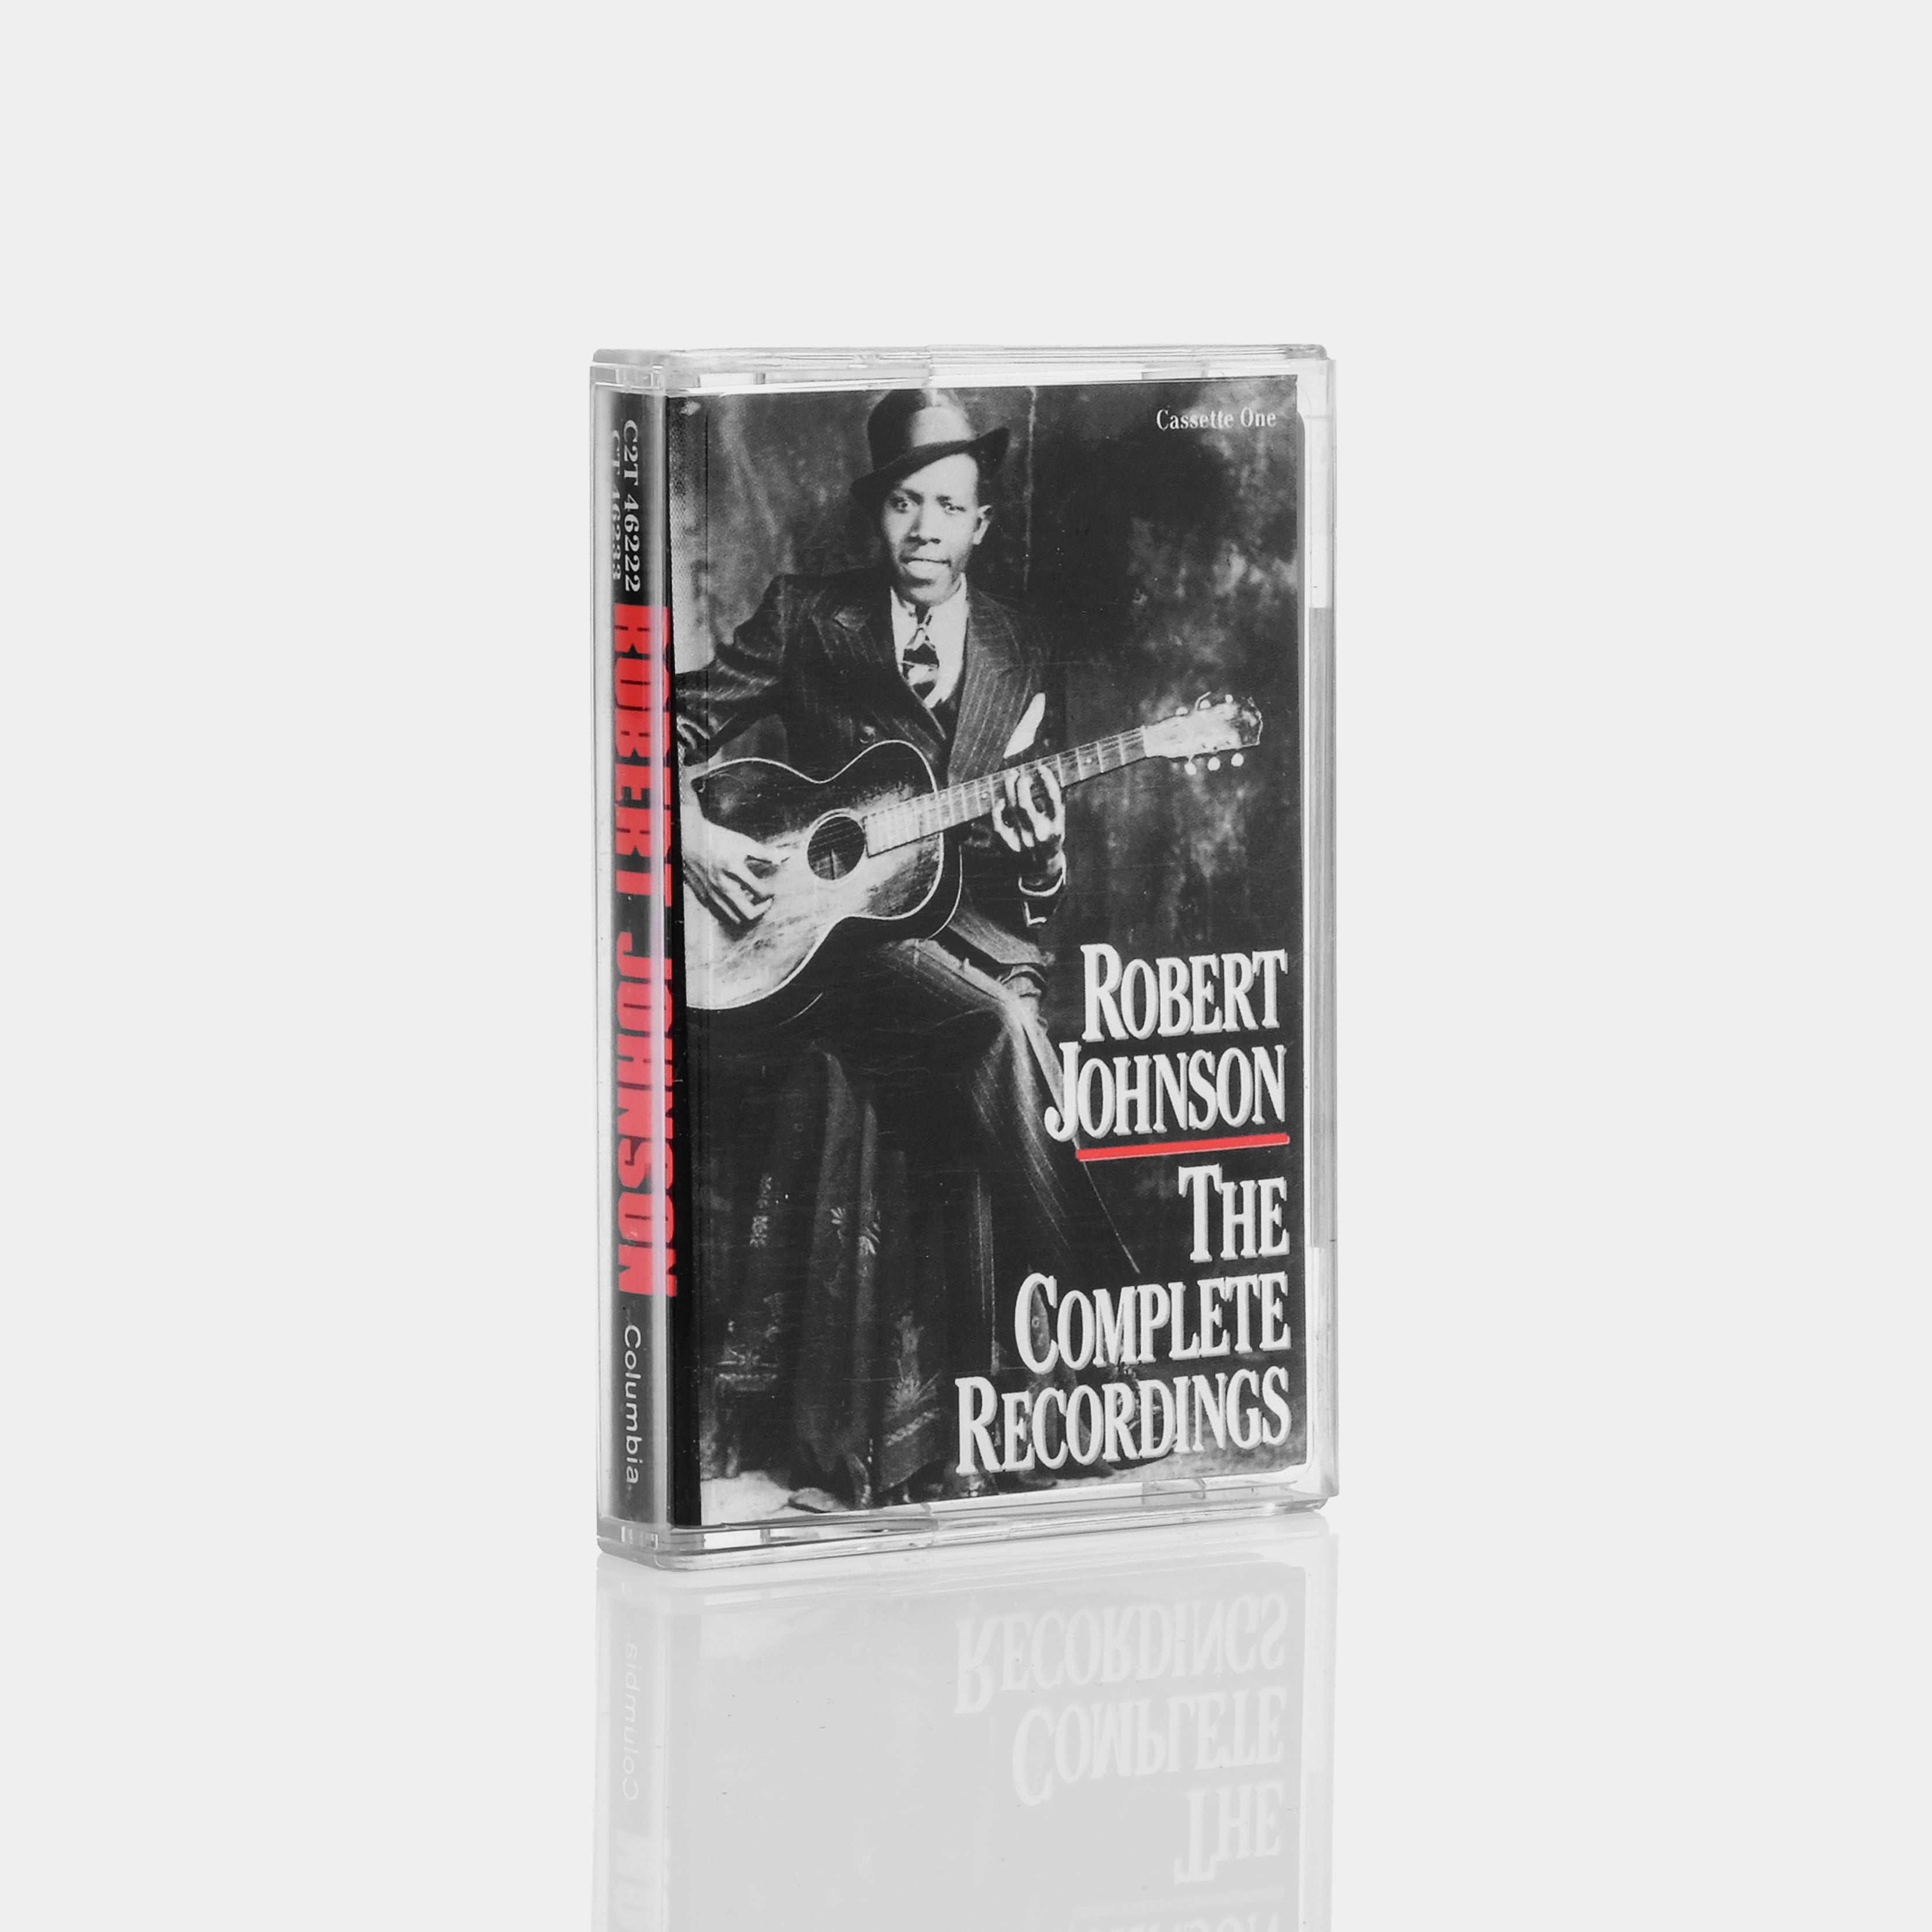 Robert Johnson - The Complete Recordings Pt.1 Cassette Tape